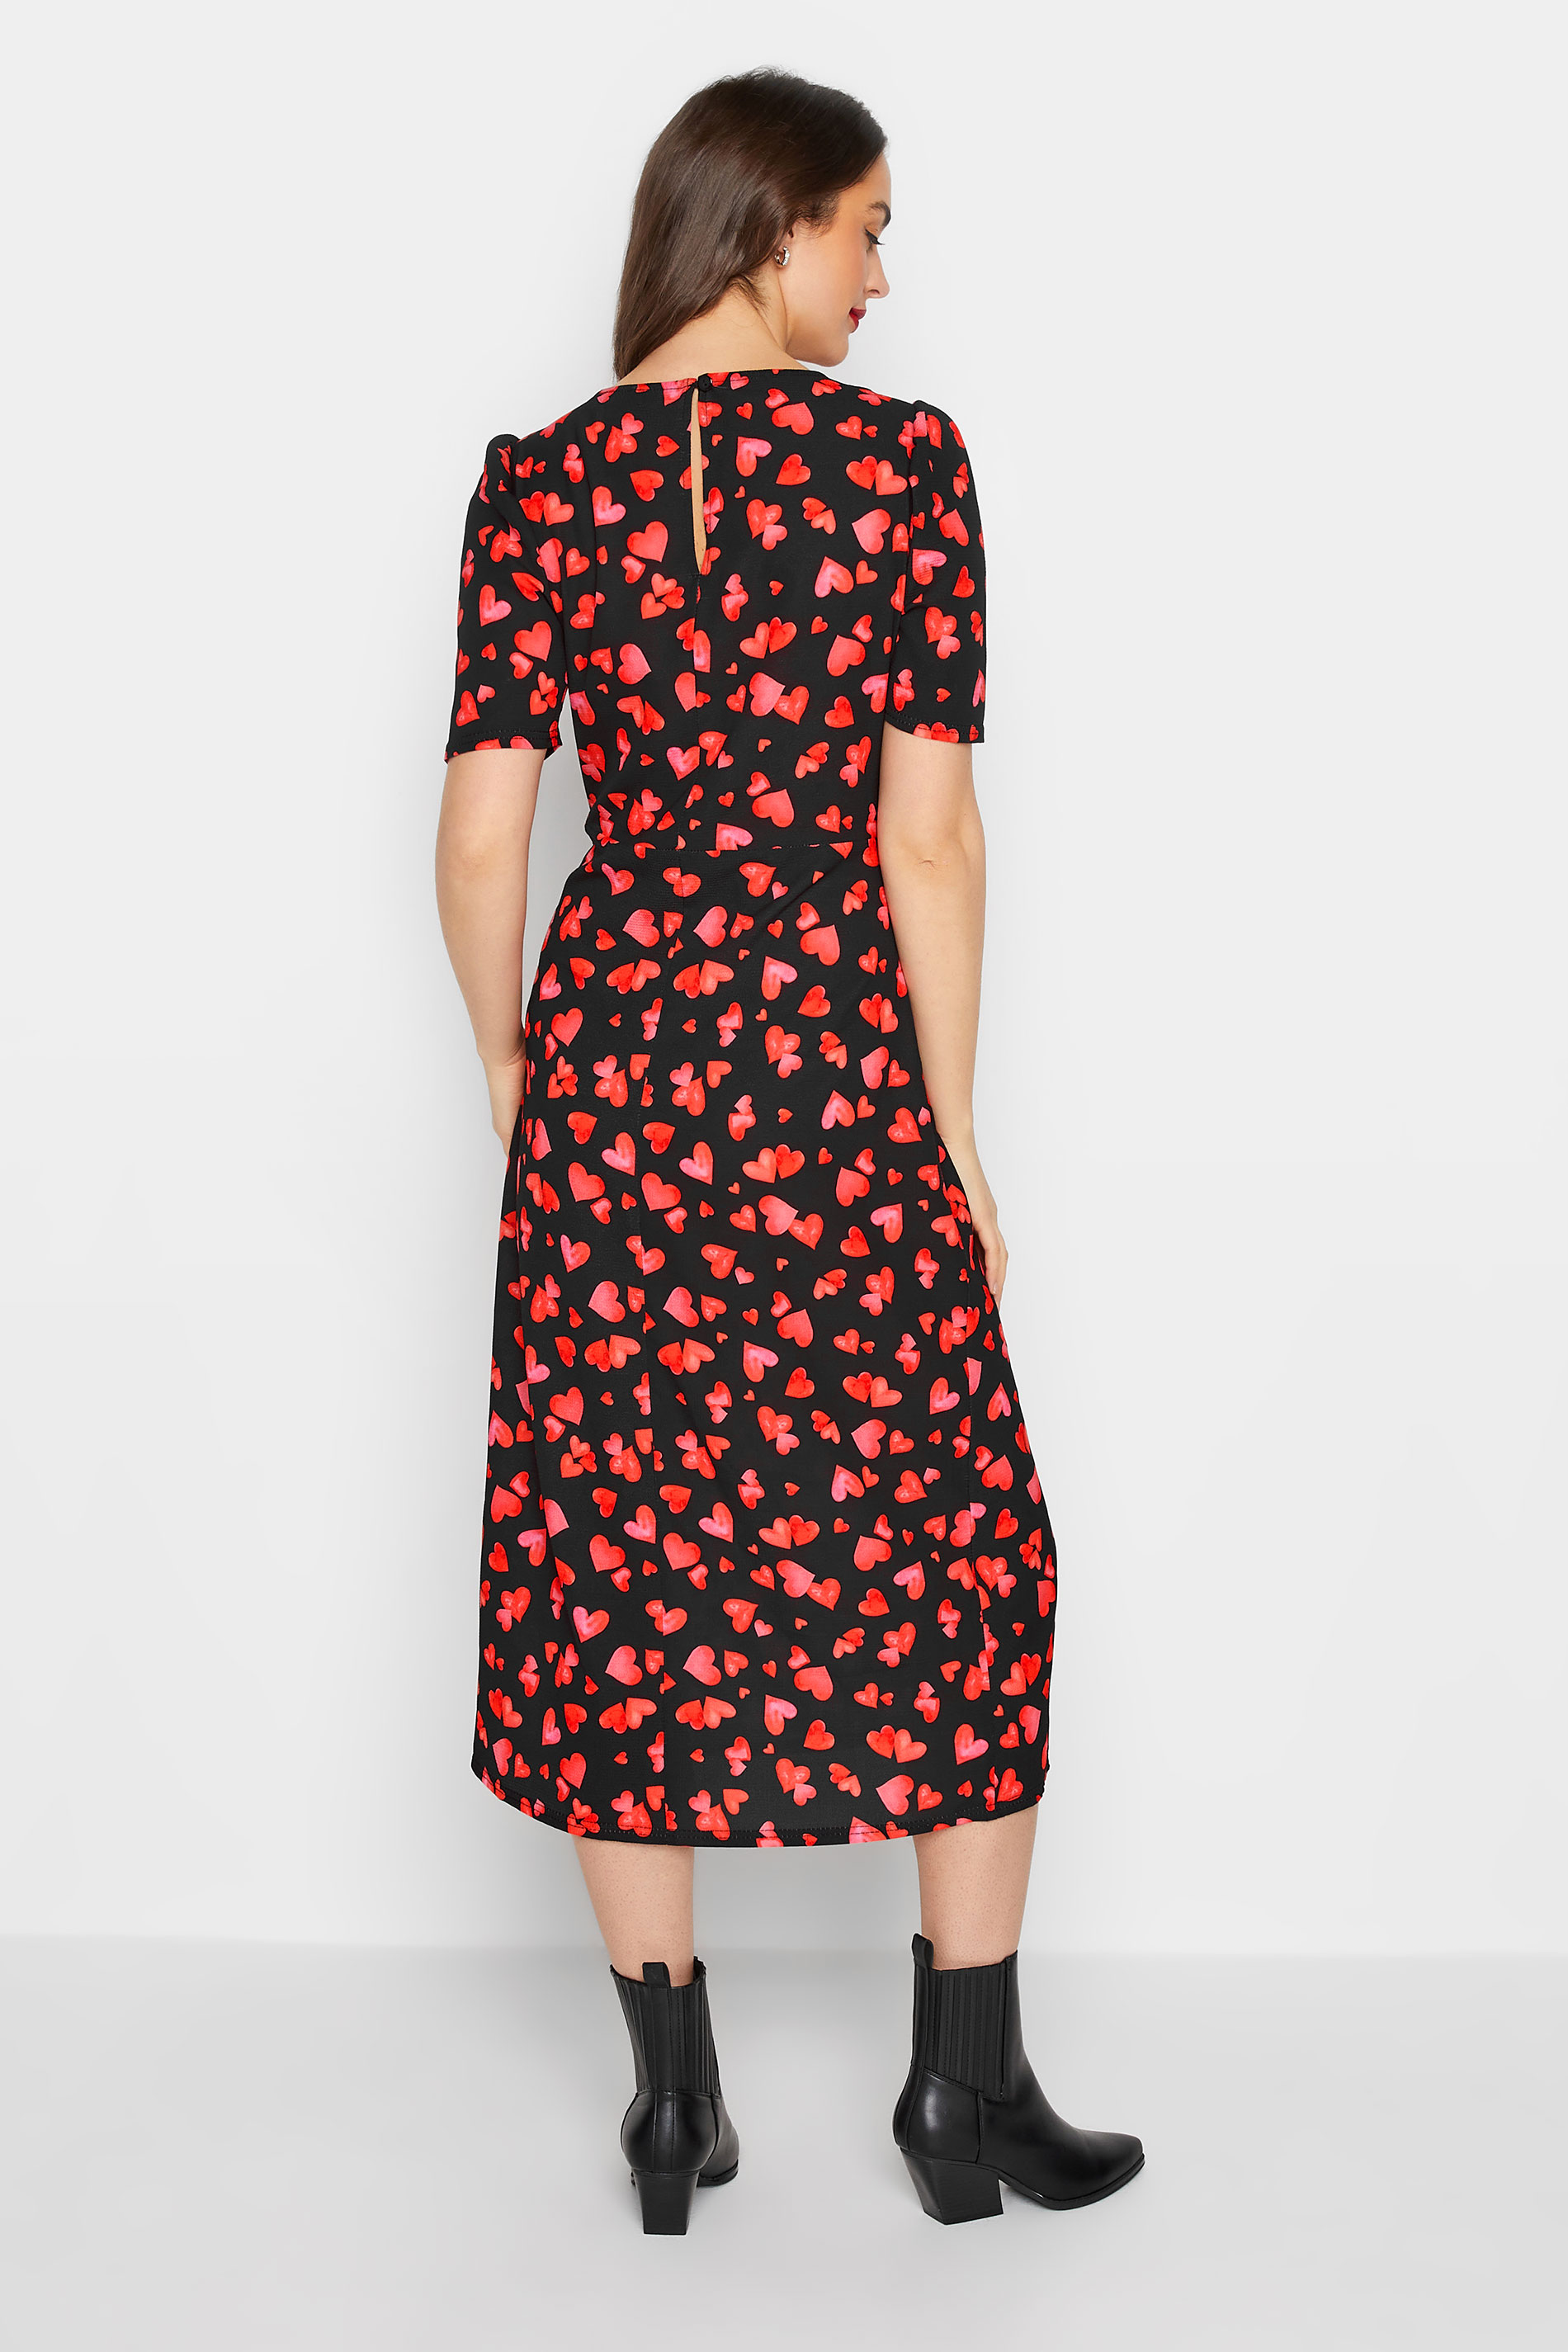 LTS Tall Women's Black Heart Print Midi Dress | Long Tall Sally 3